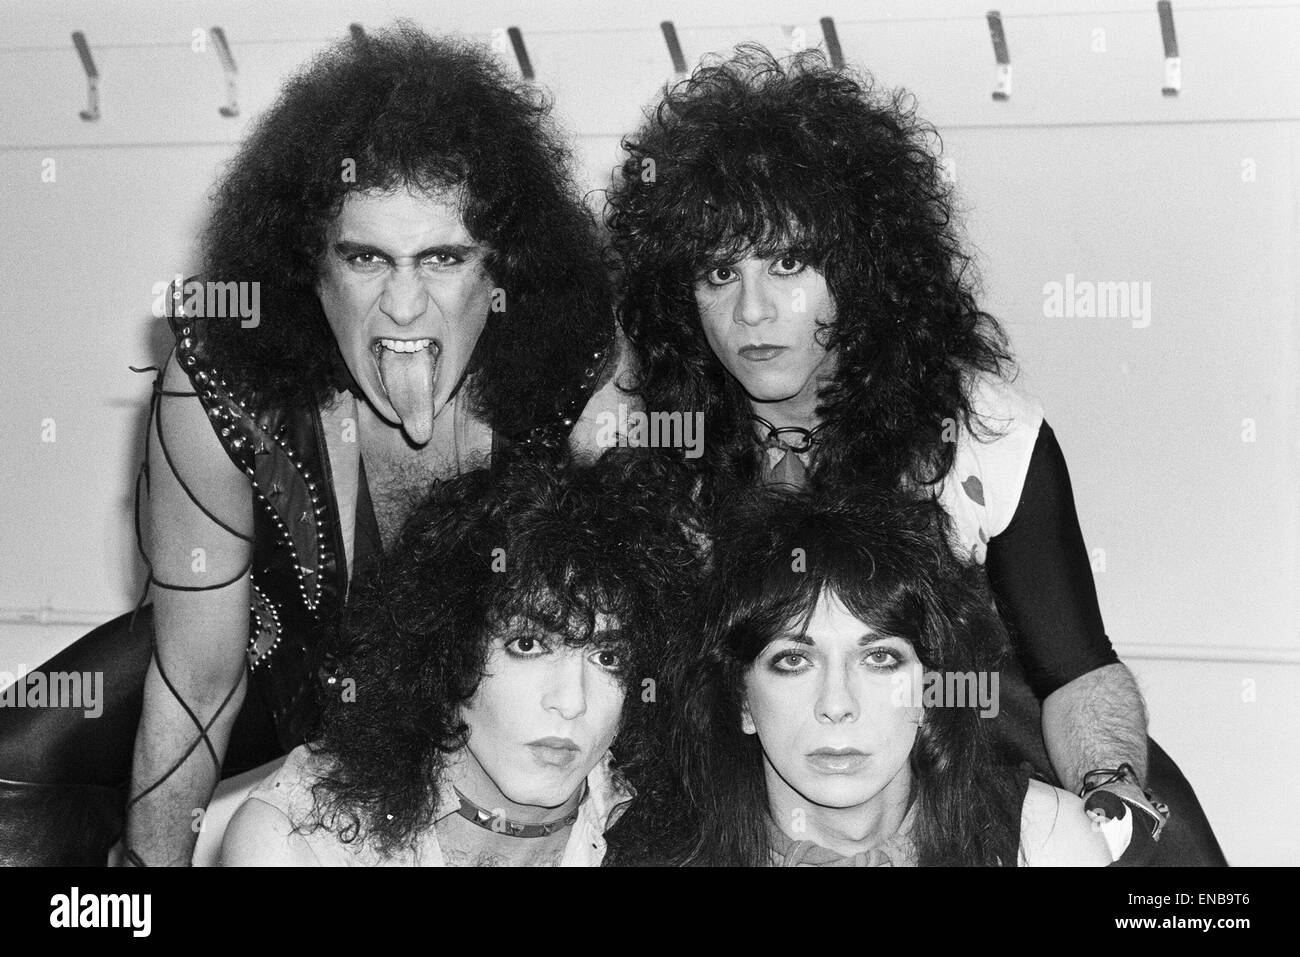 Groupe de rock américain Kiss vu ici dans une très petite pause entre les numéros lors de leur concert au Wembley Arena, soi-disant la première fois qu'ils ont été vus sans leur stade composent. Rangée du haut de gauche à droite sont : Gene Simmons et Eric Carr. Rangée du bas : Paul Banque D'Images